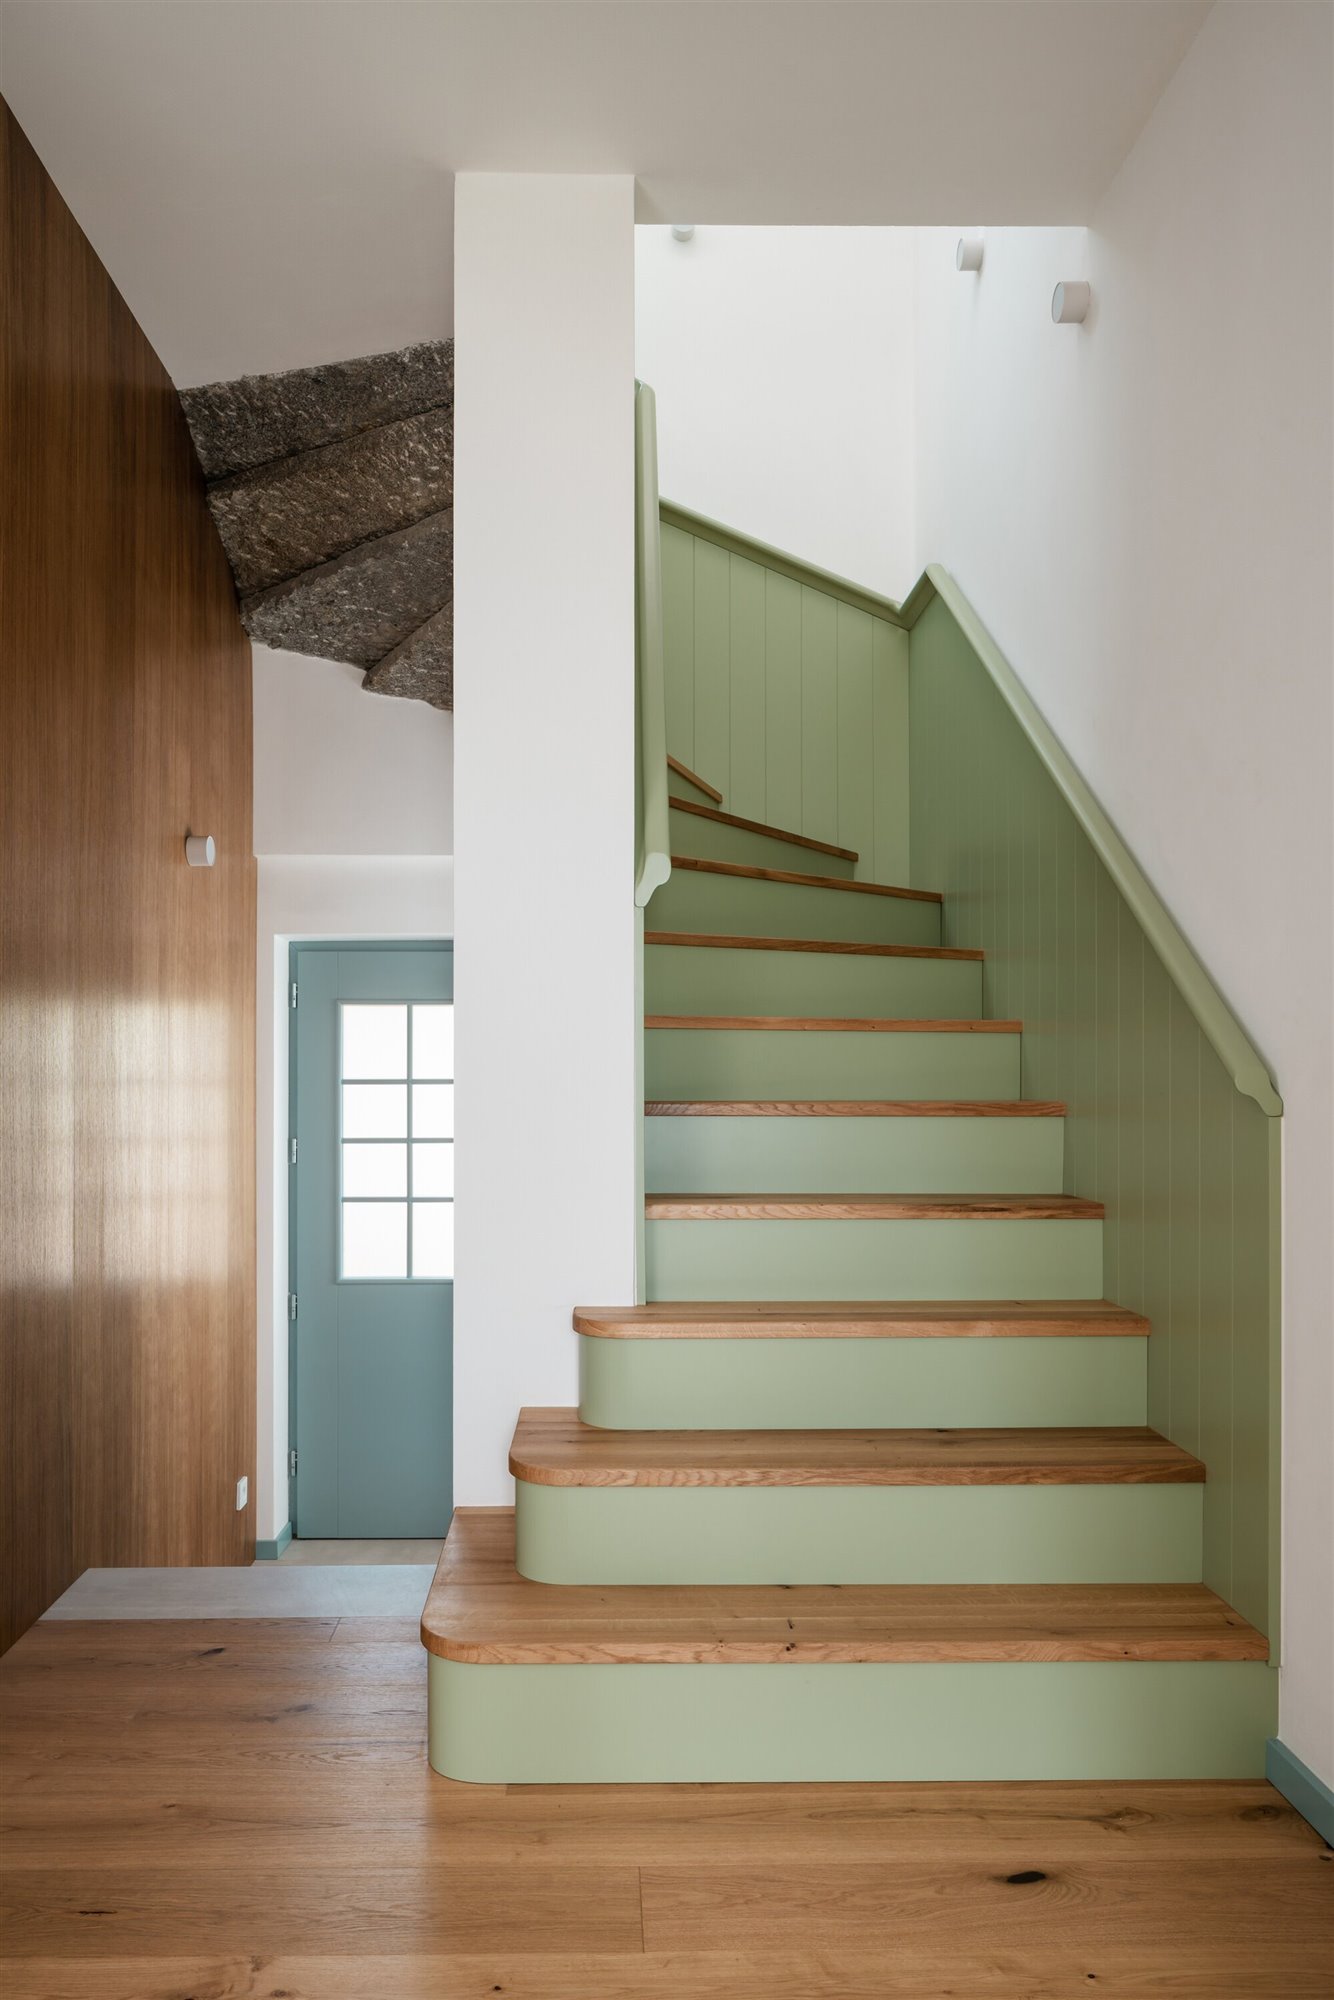 Escalera de madera color verde